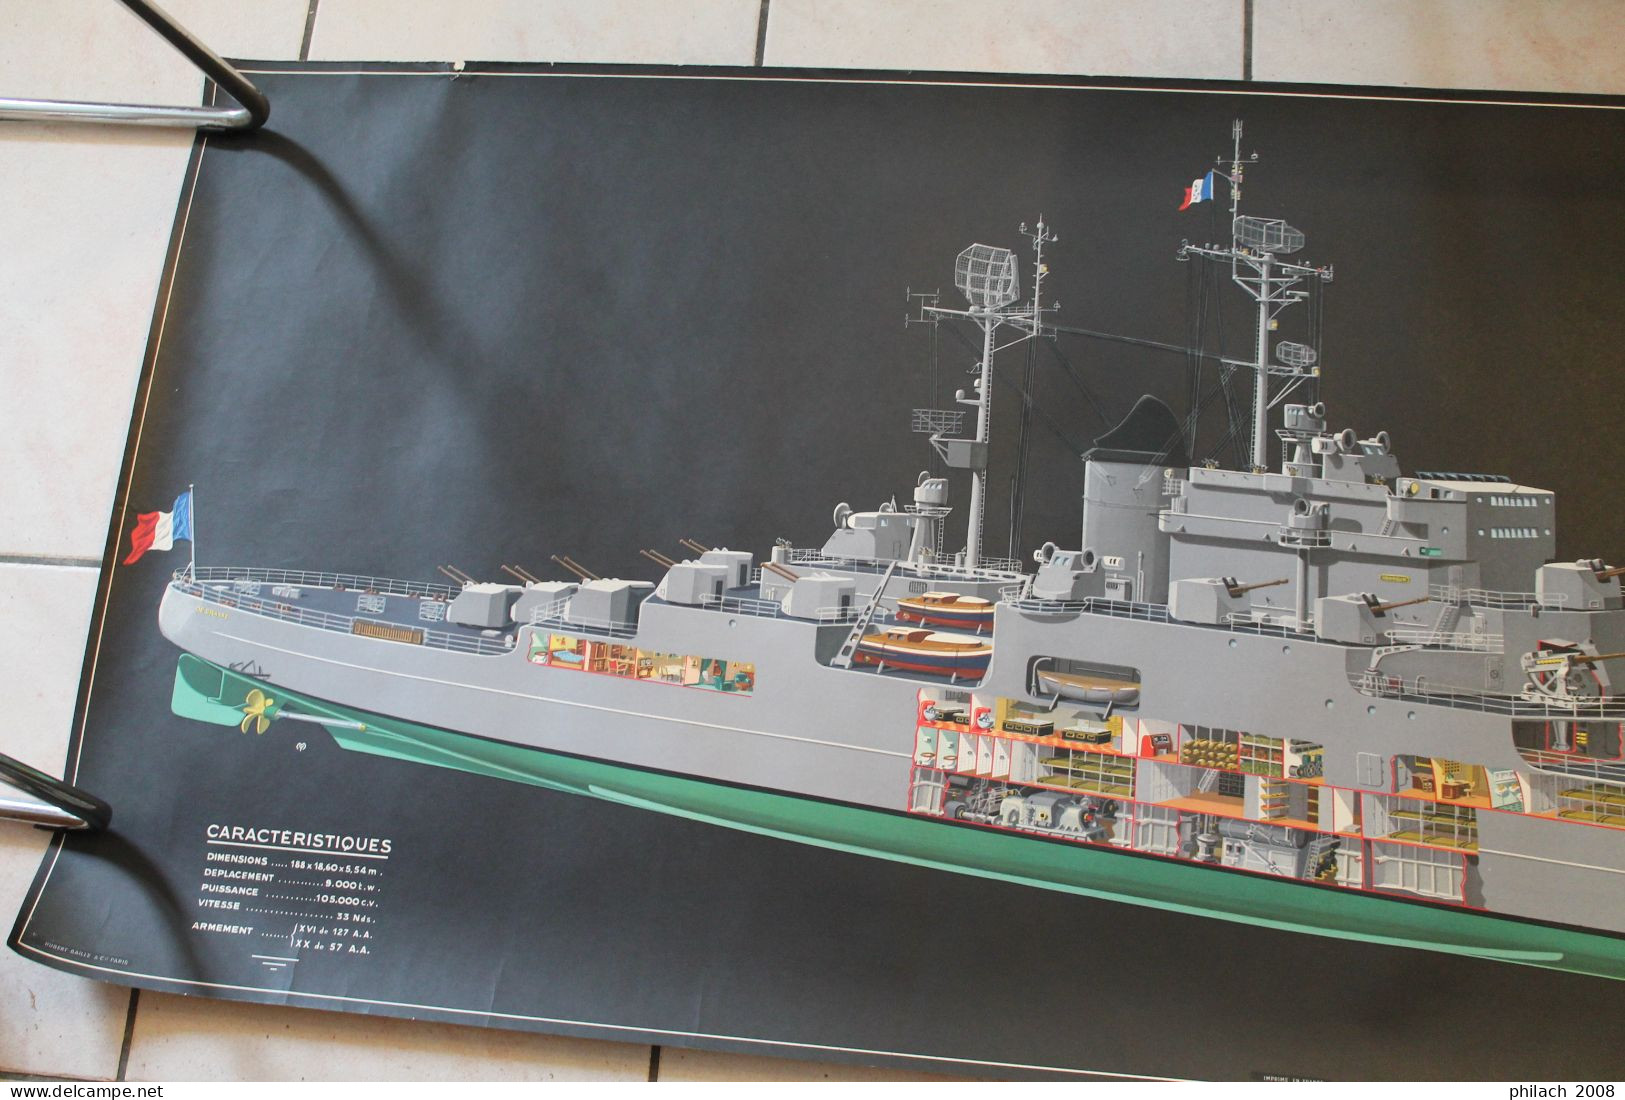 Grande Affiche Du Croiseur Anti Aérien DE GRASSE à Sa Mise En Service - Boats